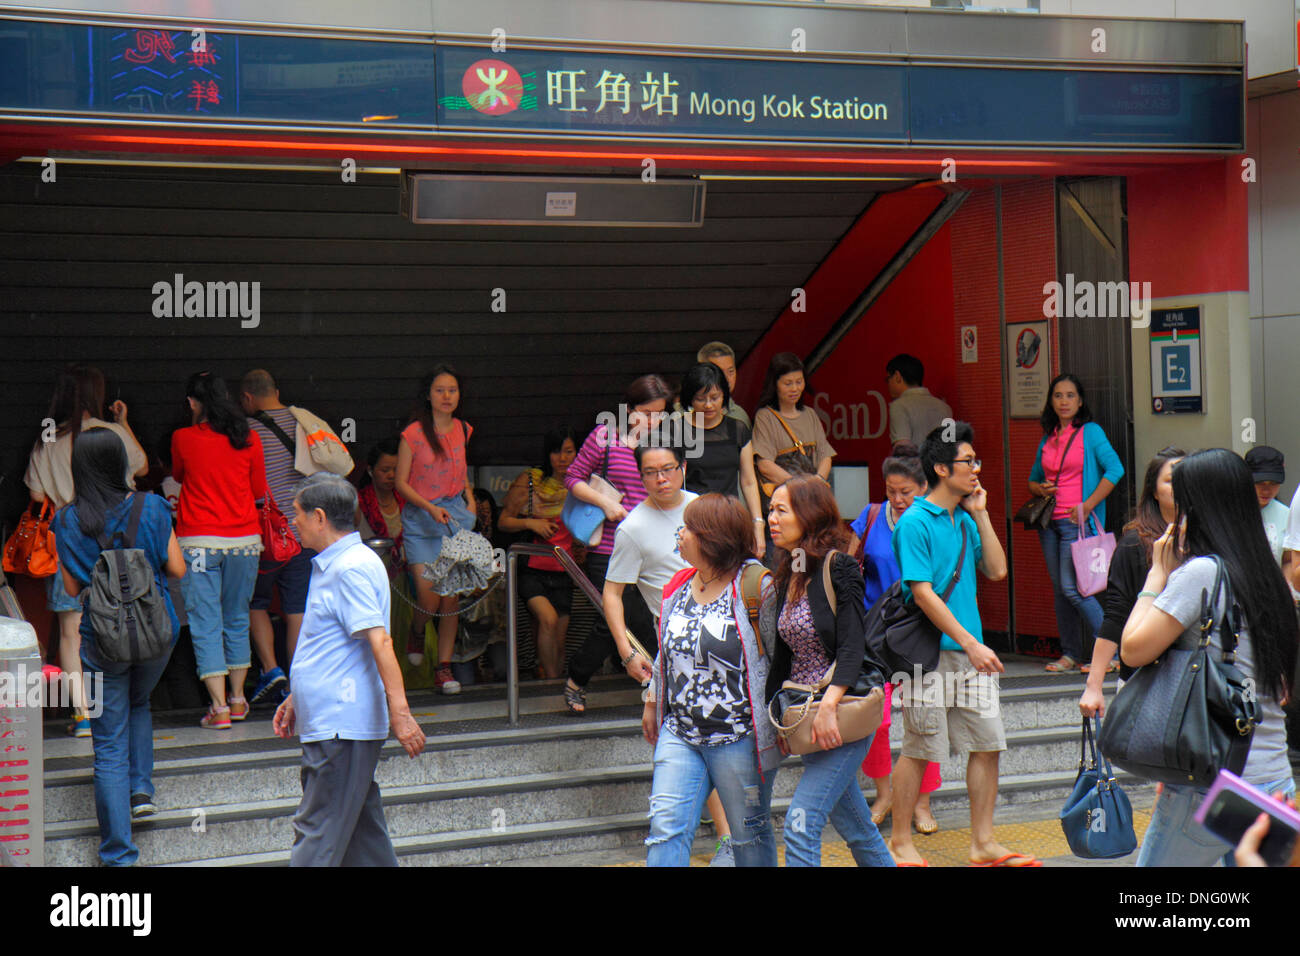 Hongkong China, Hongkong, Asien, Chinesisch, Orientalisch, Kowloon, Mong Kok, Nathan Road, Mong Kok MTR U-Bahnstation, Eingang, Ausgang, Fahrer, asiatischer Erwachsener, Erwachsene, Frau weiblich Stockfoto